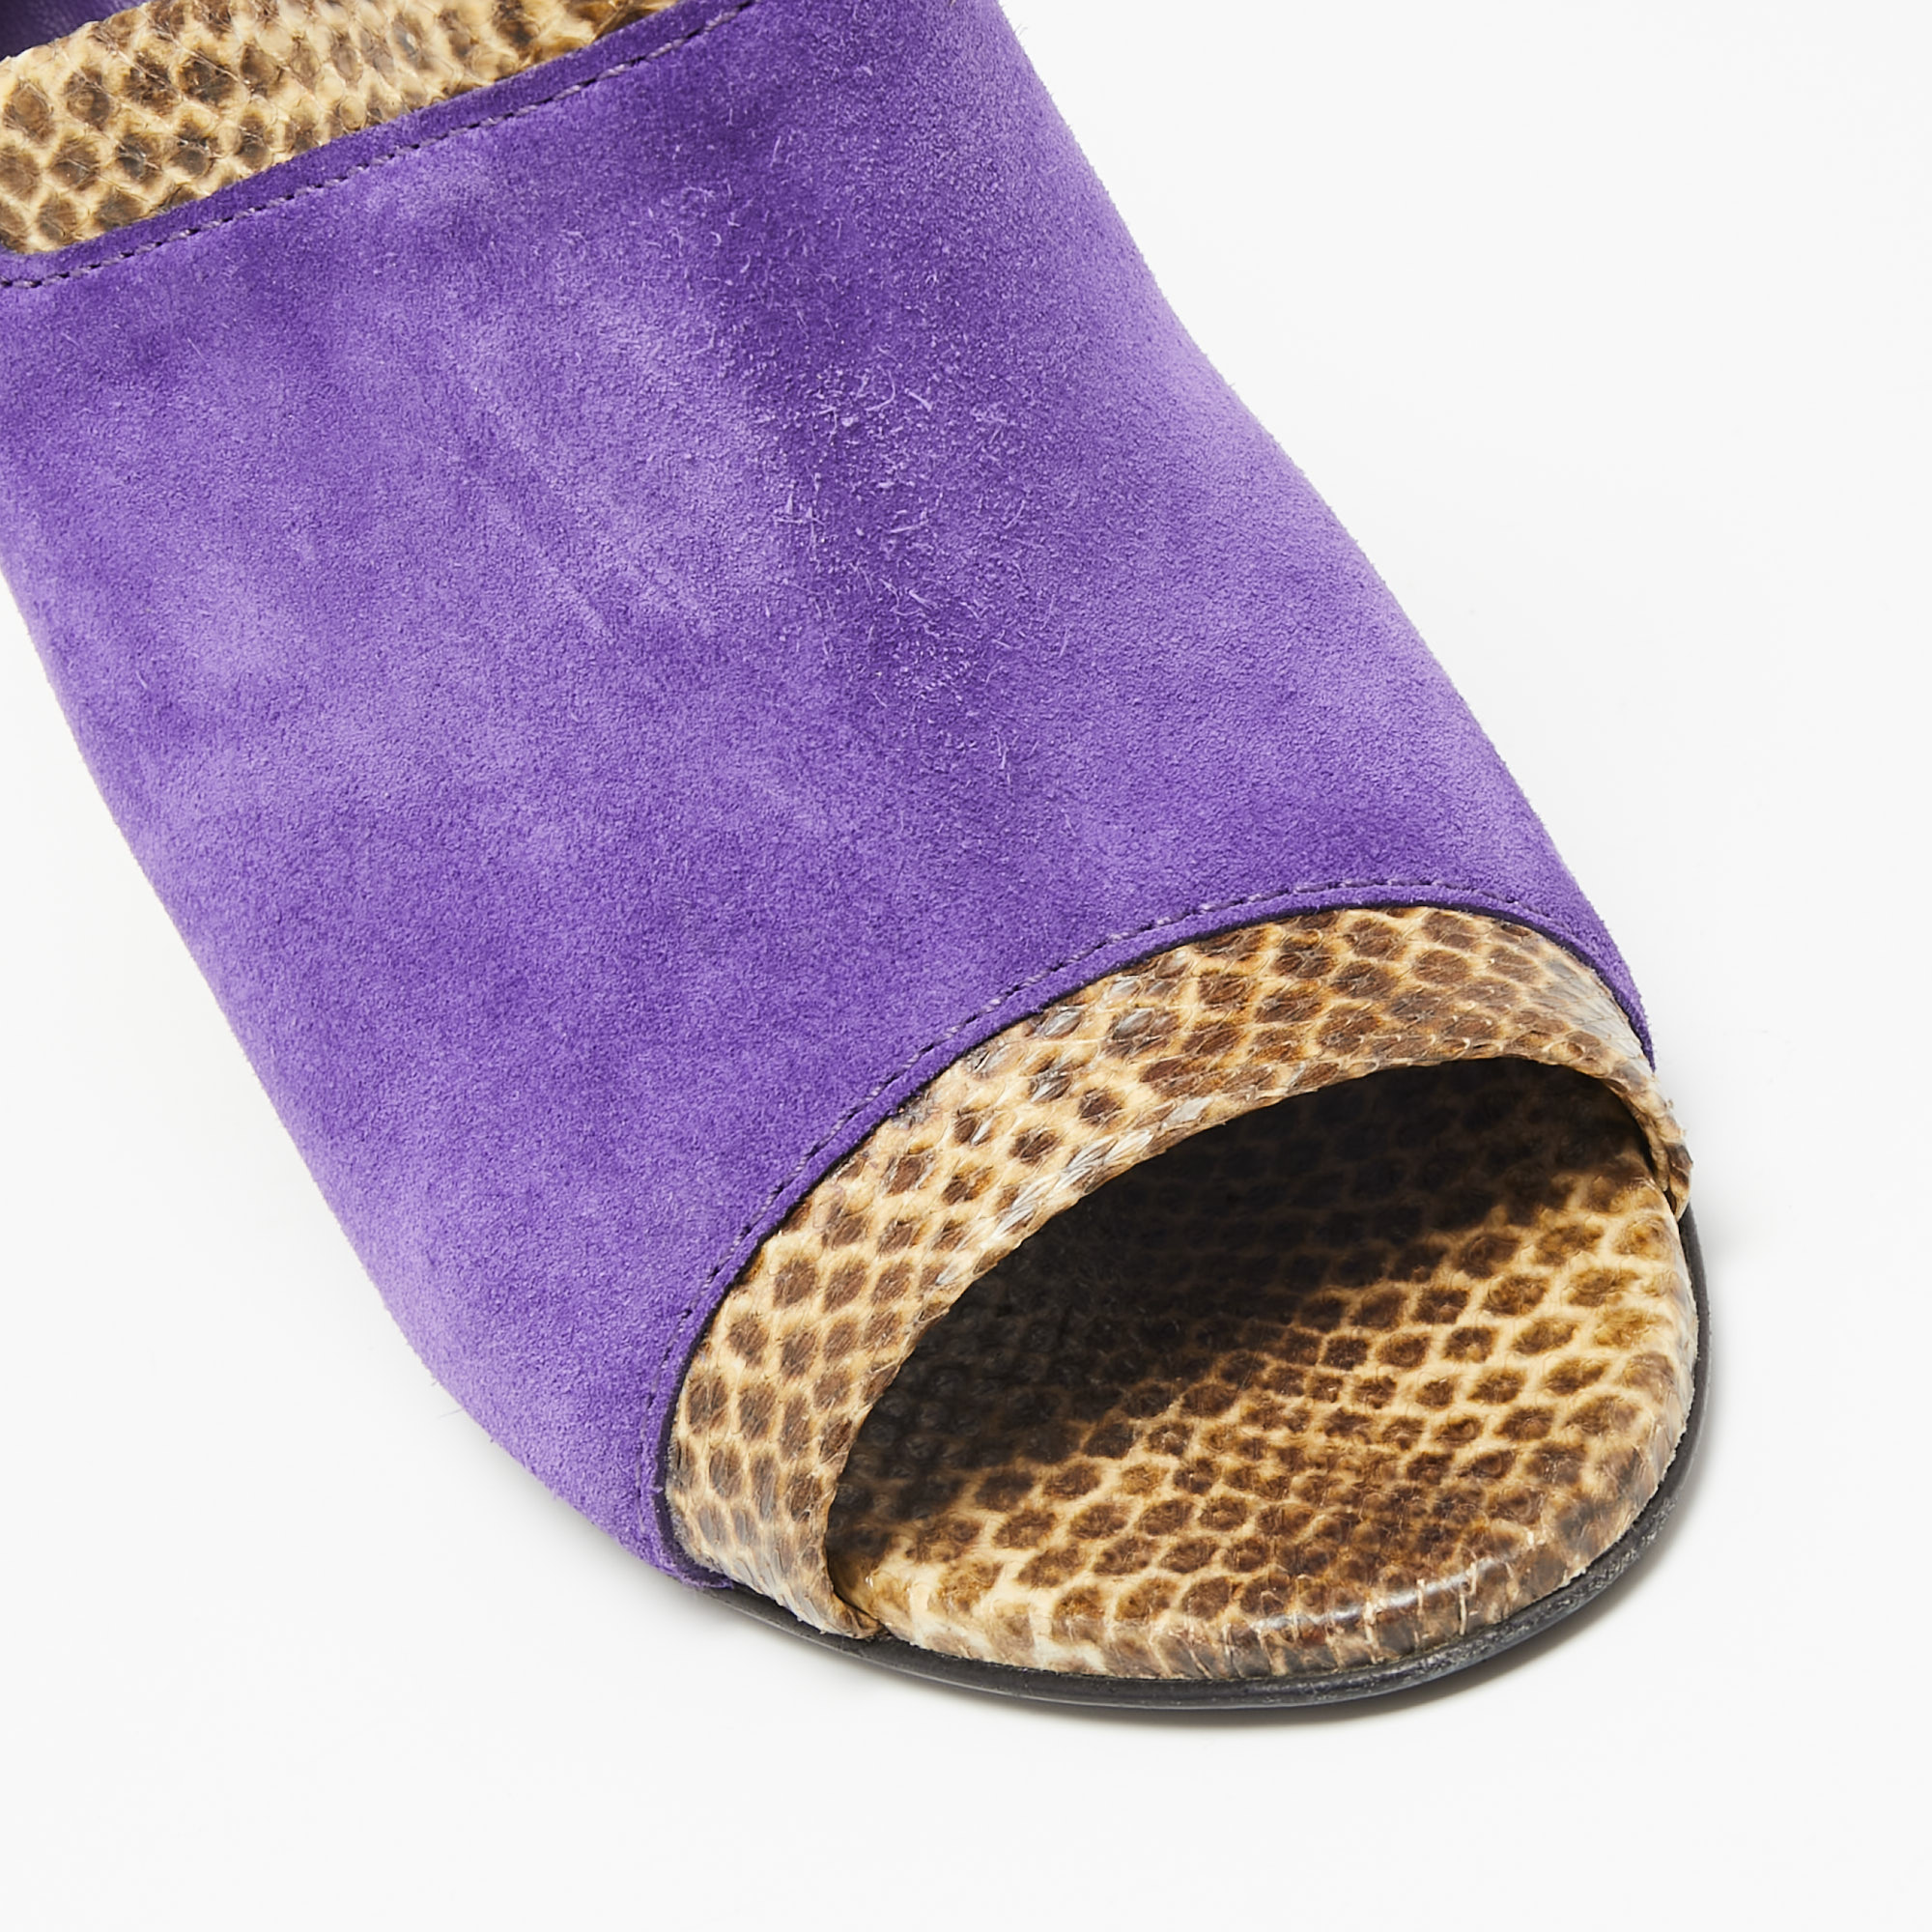 Bottega Veneta Tri-Color Suede And Snakeskin Leather Slingback Sandals Size 39.5